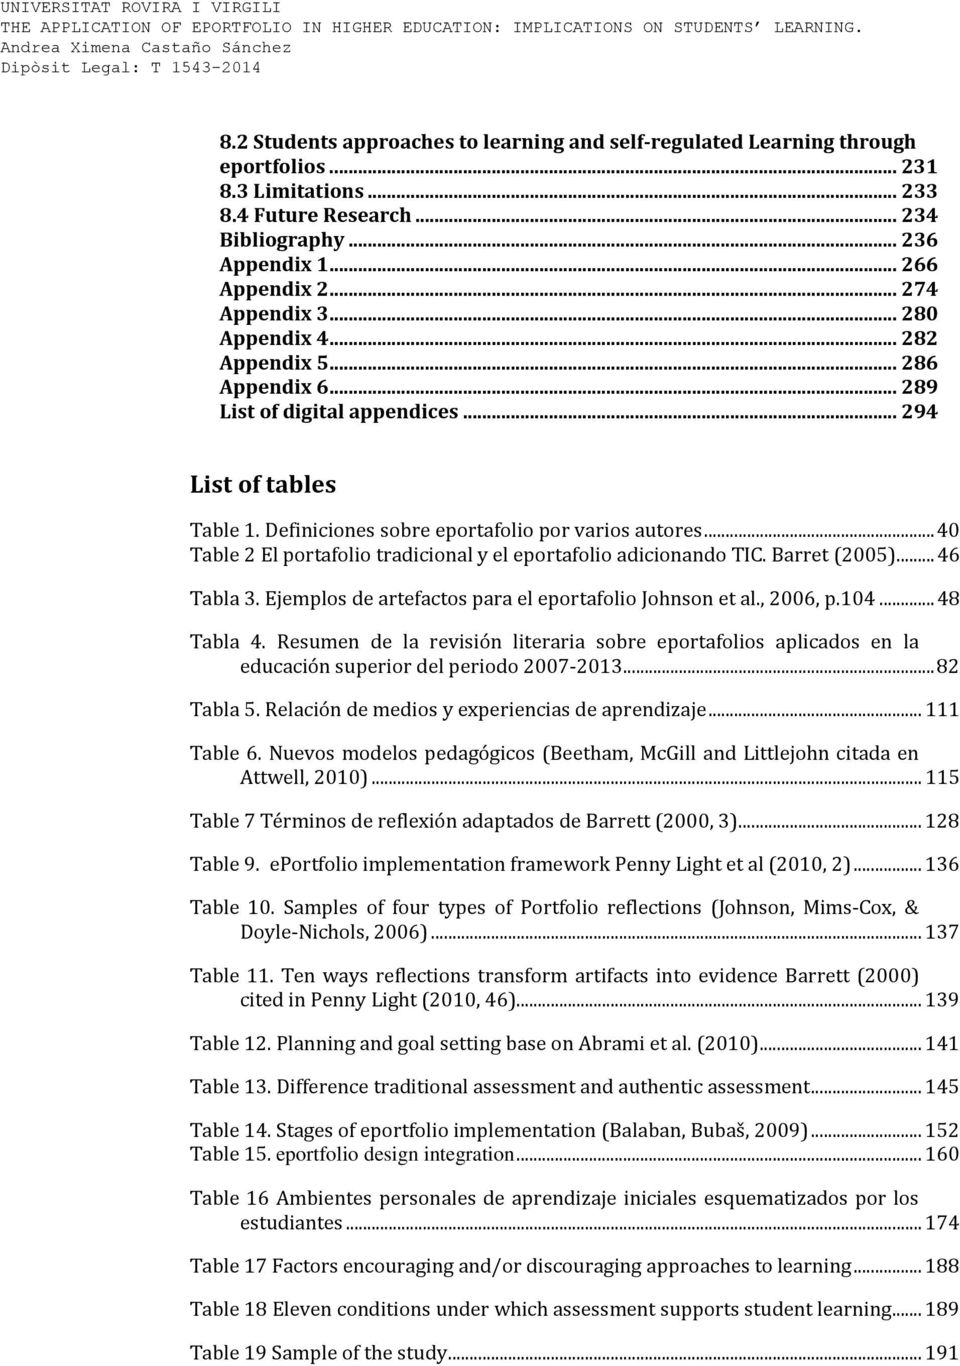 .. 40 Table 2 El portafolio tradicional y el eportafolio adicionando TIC. Barret (2005)... 46 Tabla 3. Ejemplos de artefactos para el eportafolio Johnson et al., 2006, p.104... 48 Tabla 4.